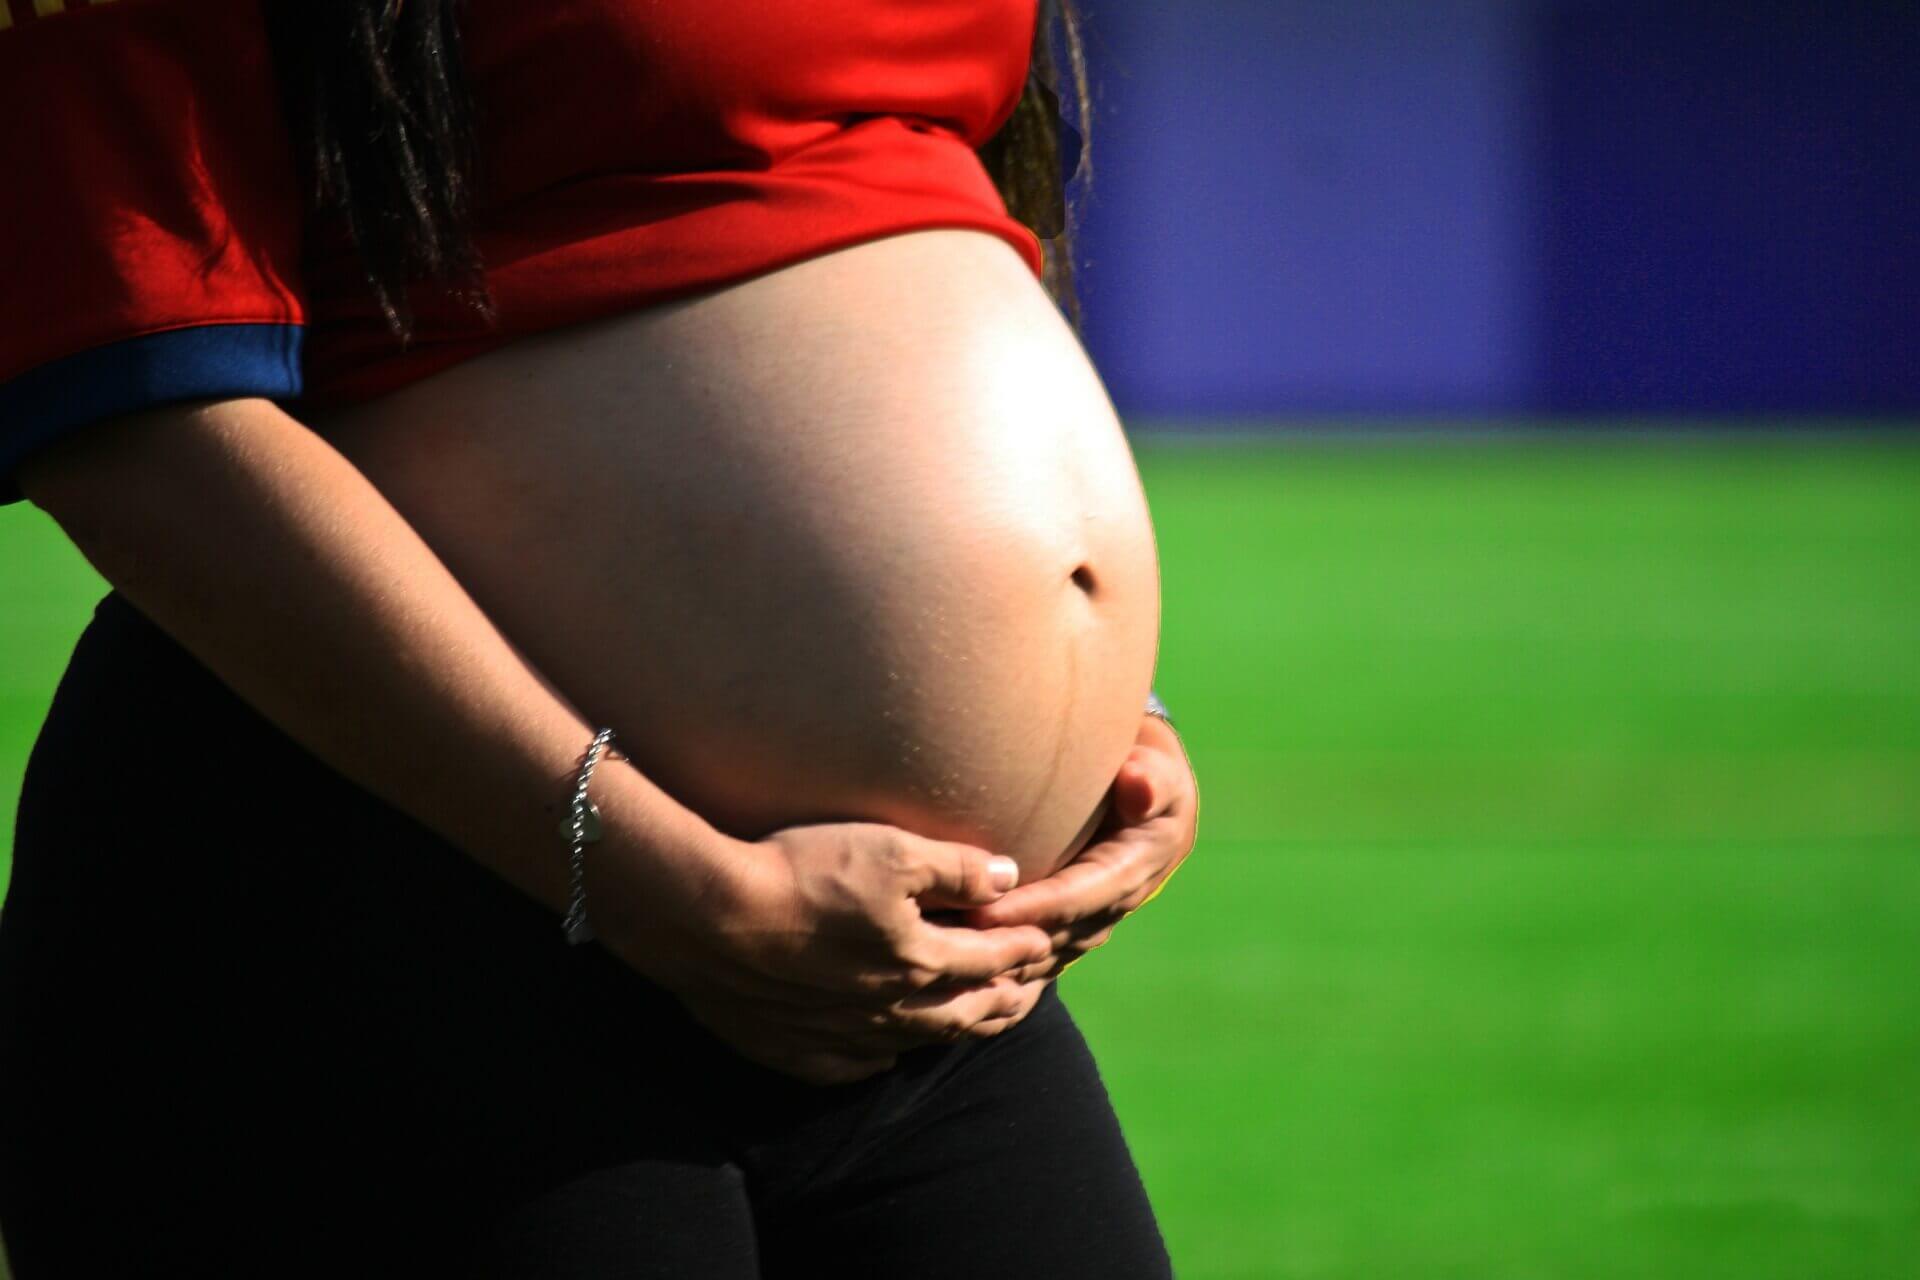 Faire de l'exercice pendant et après la grossesse est possible après avoir demander conseil à son médecin